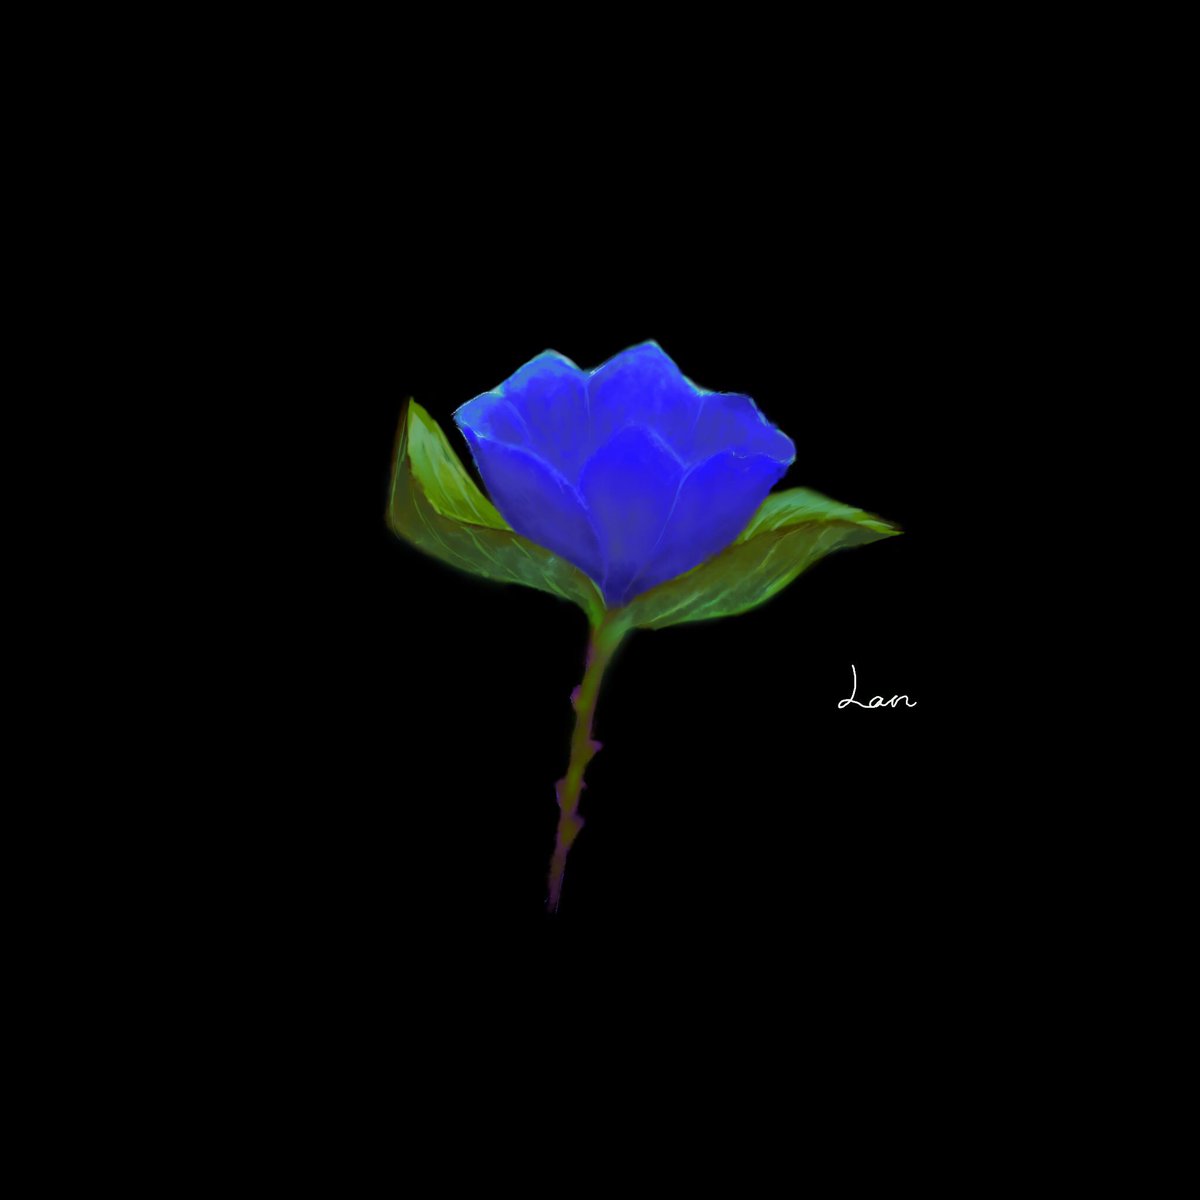 らん 月の光で咲く花 イラスト オリジナル Art 絵描きさんと繋がりたい 創作 花 植物 青 綺麗